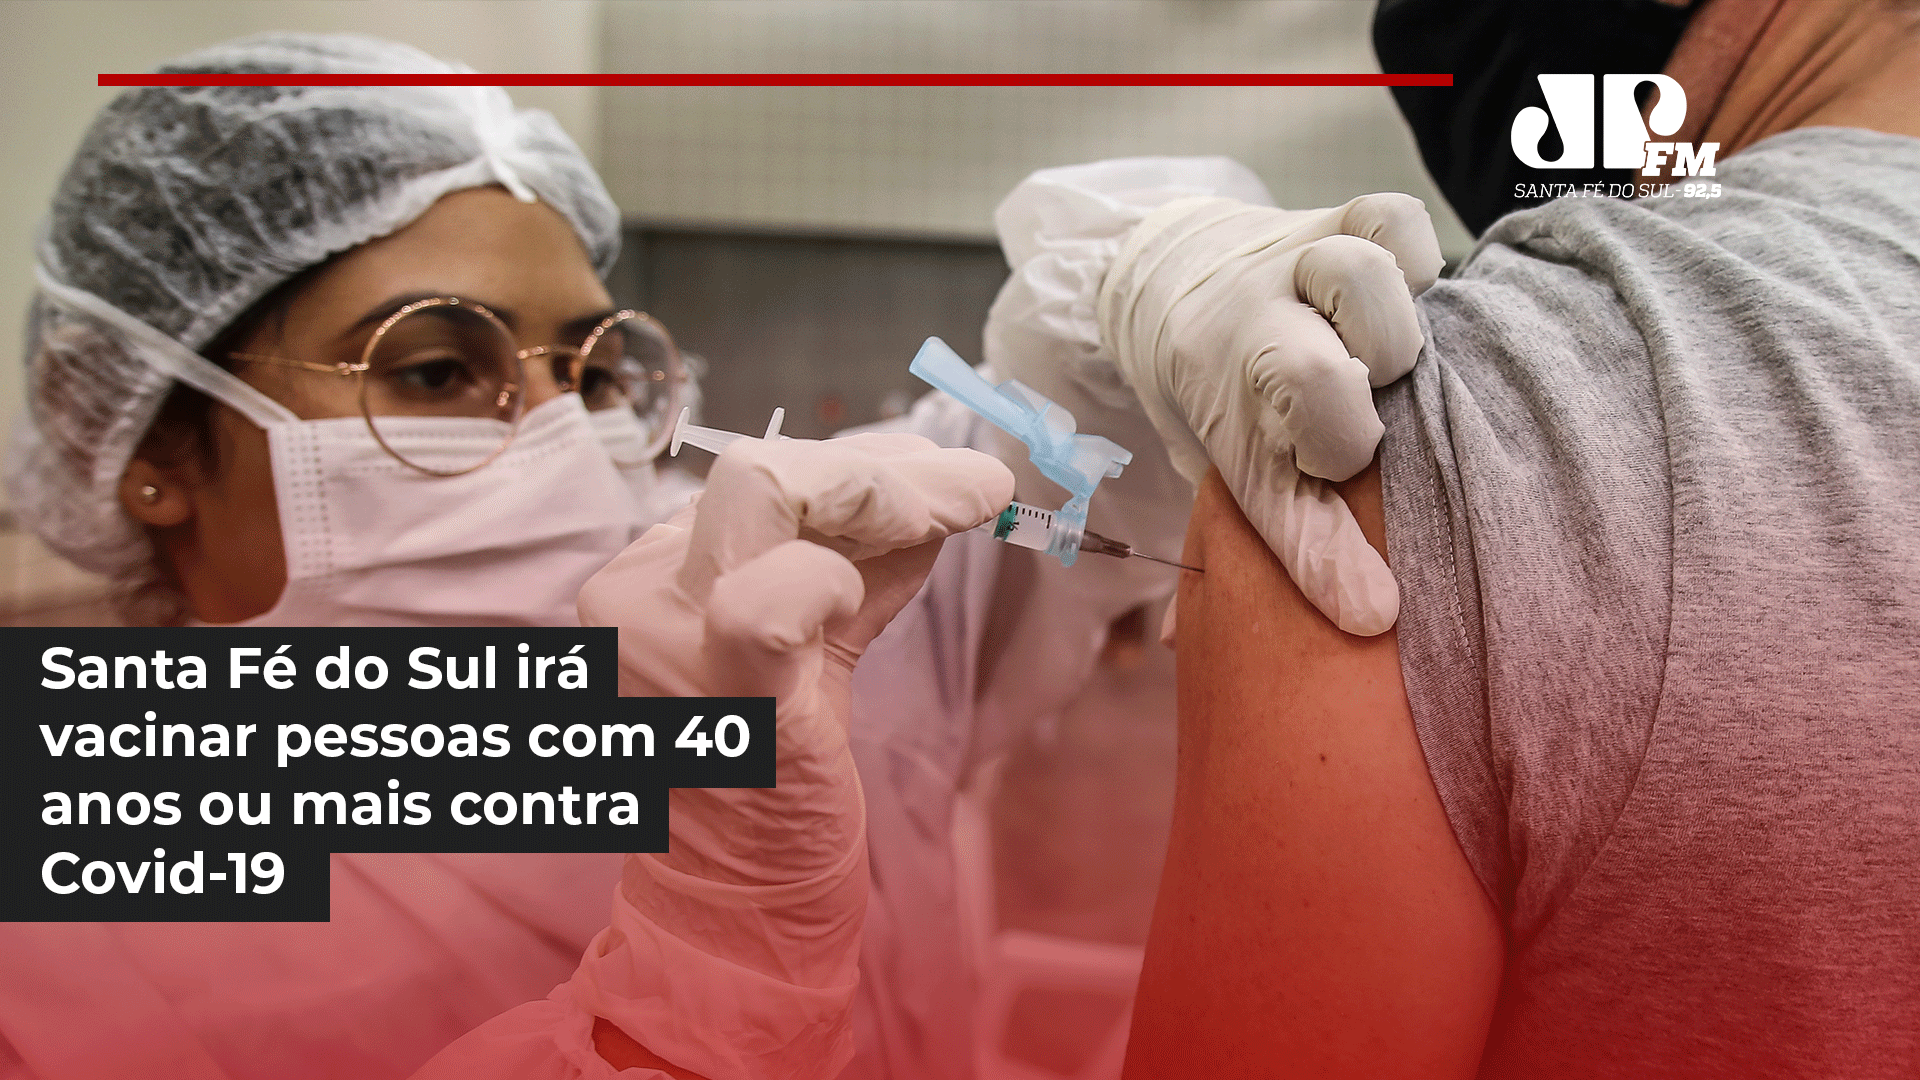 Secretaria de Saúde de Santa Fé do Sul divulga vacinação contra Covid-19 para pessoas com 40 anos ou mais